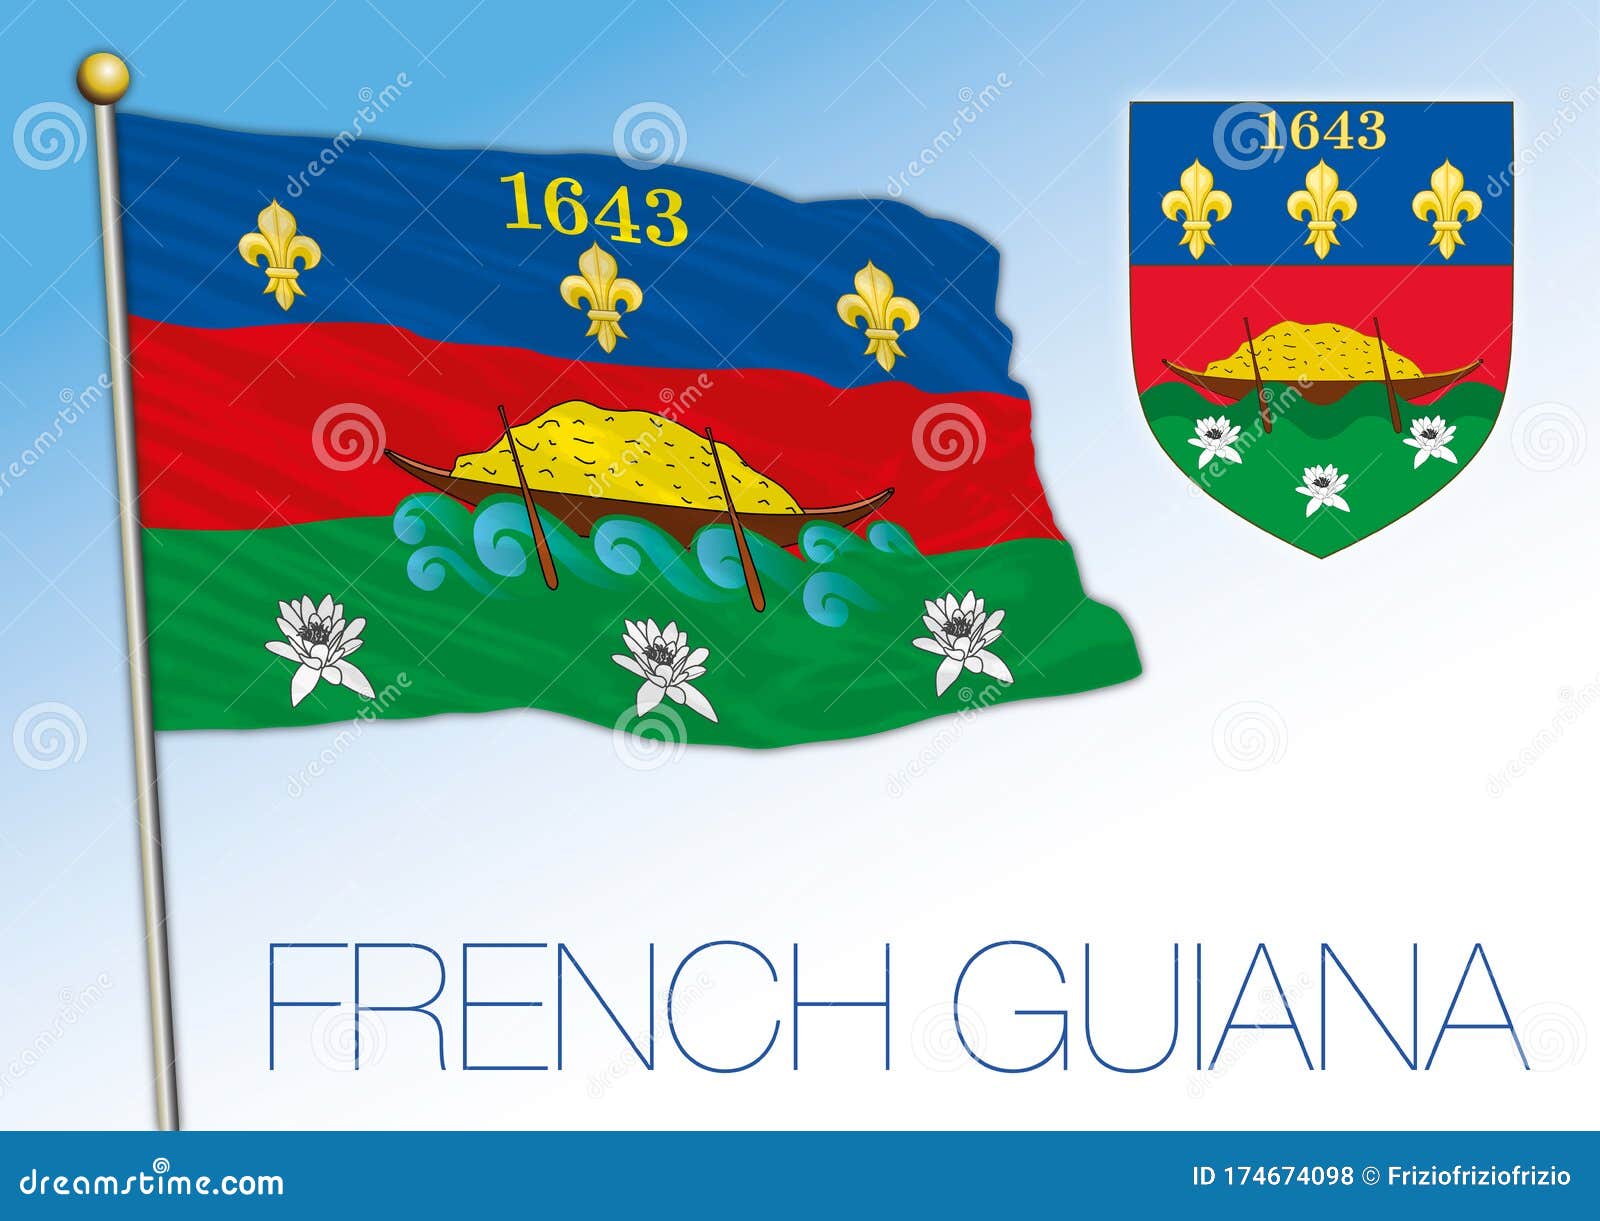 法属圭亚那国旗和军徽 法属 南美向量例证 插画包括有政府 爱国者 欧洲 标志 颜色 国家